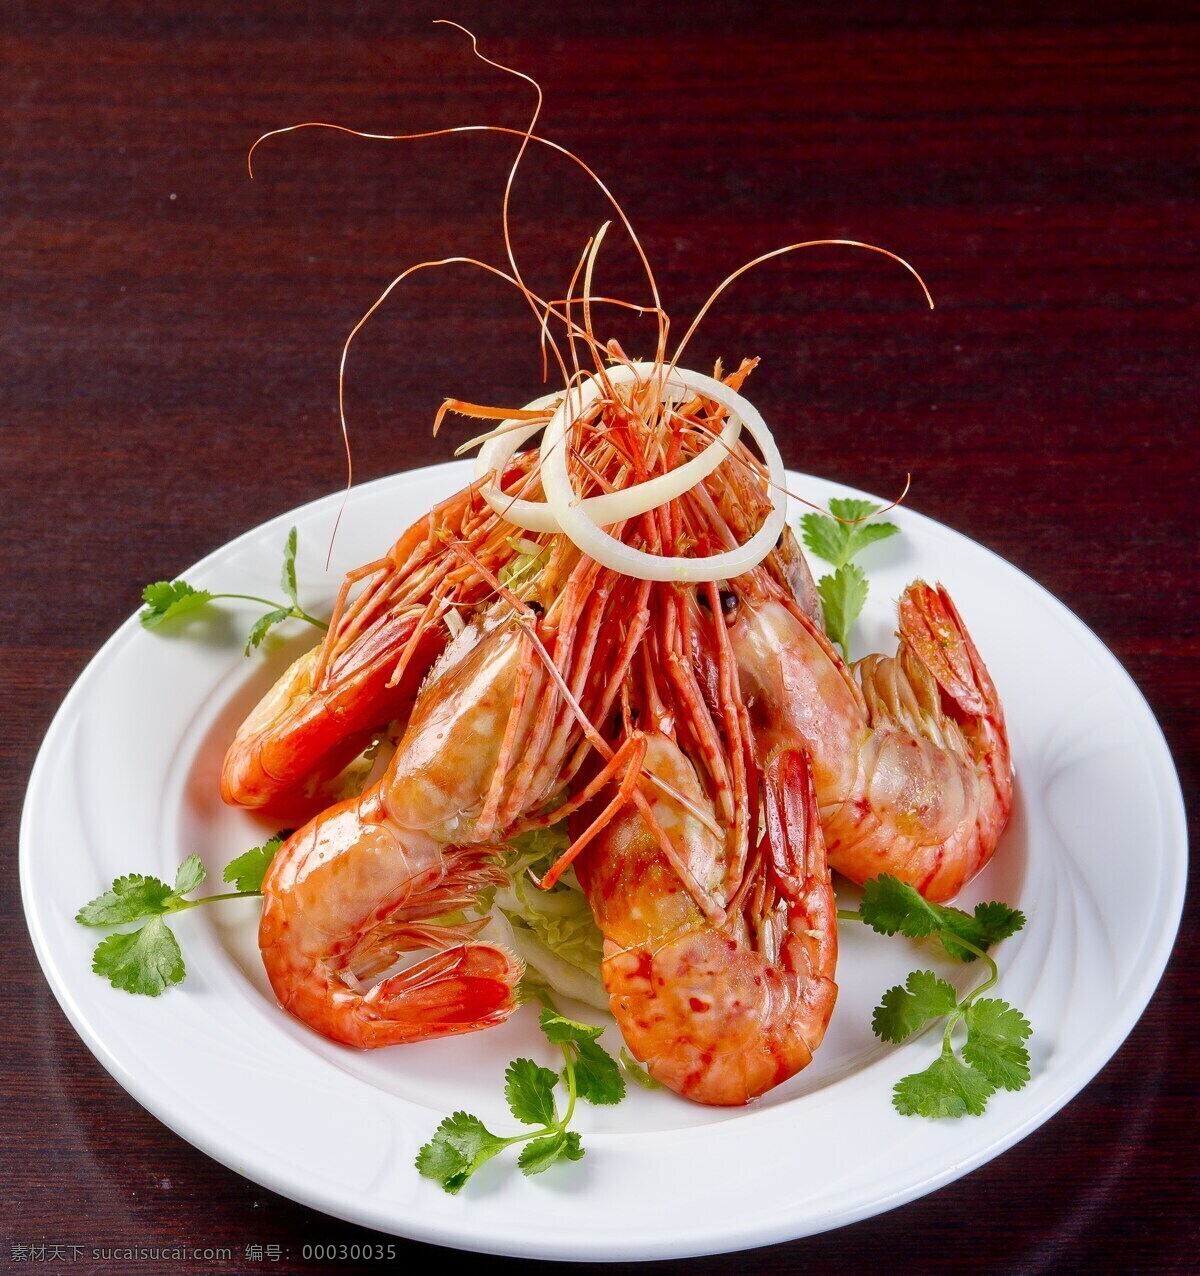 唯美 美食 美味 营养 健康 传统 广东菜 粤菜 广式大虾 基围虾 餐饮美食 传统美食